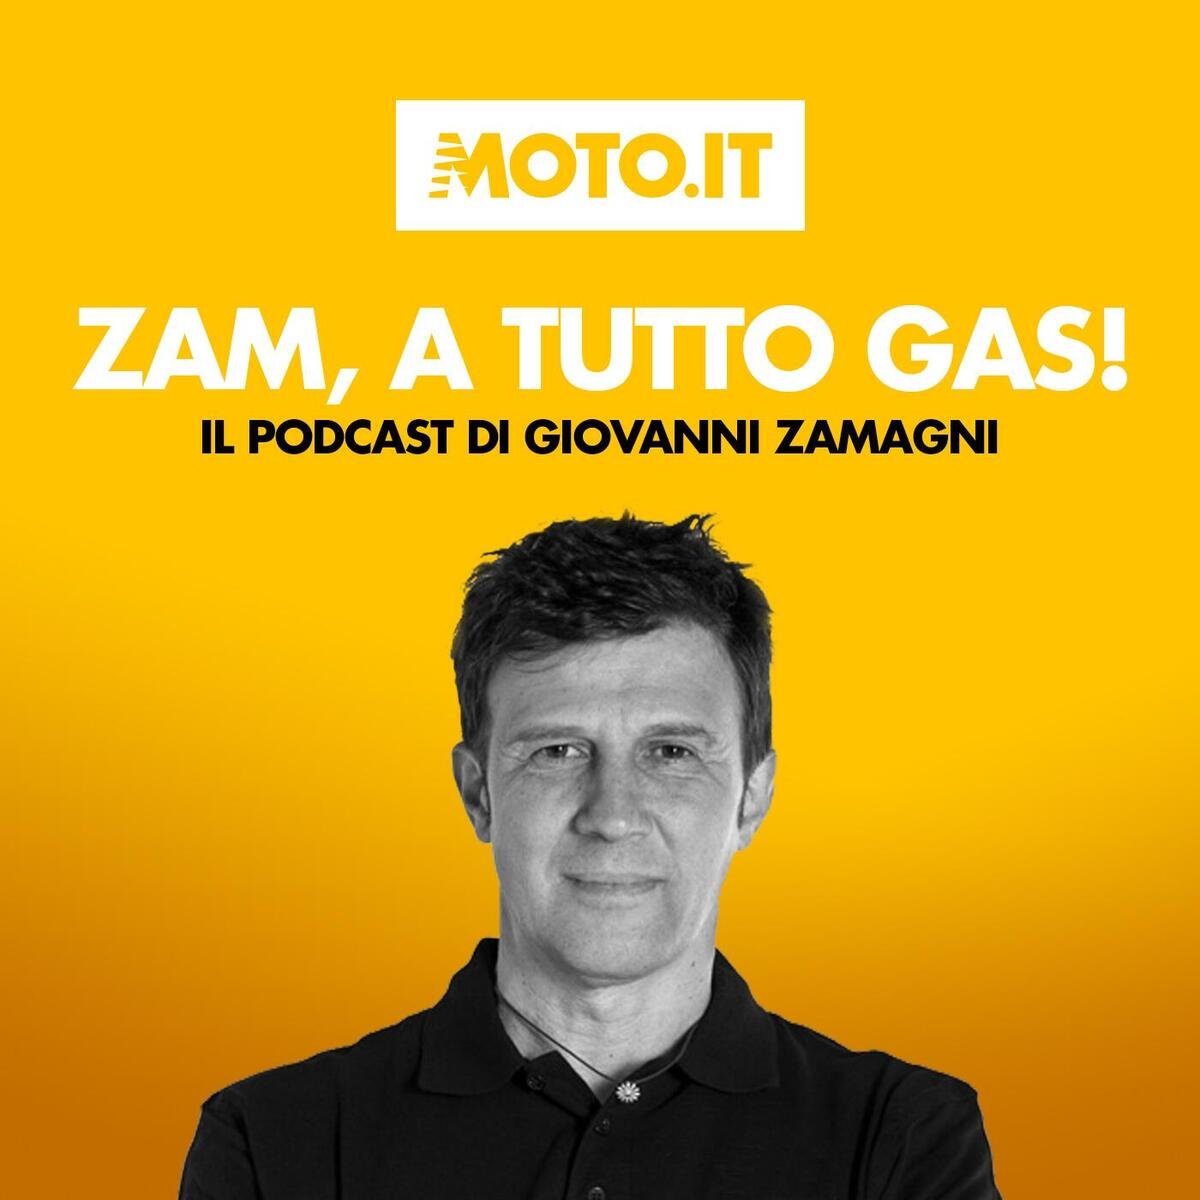 zam-a-tutto-gas-#105-tutto-sulla-ducati-motoe,-una-vera-ducati-[podcast]-–-sport-–-moto.it